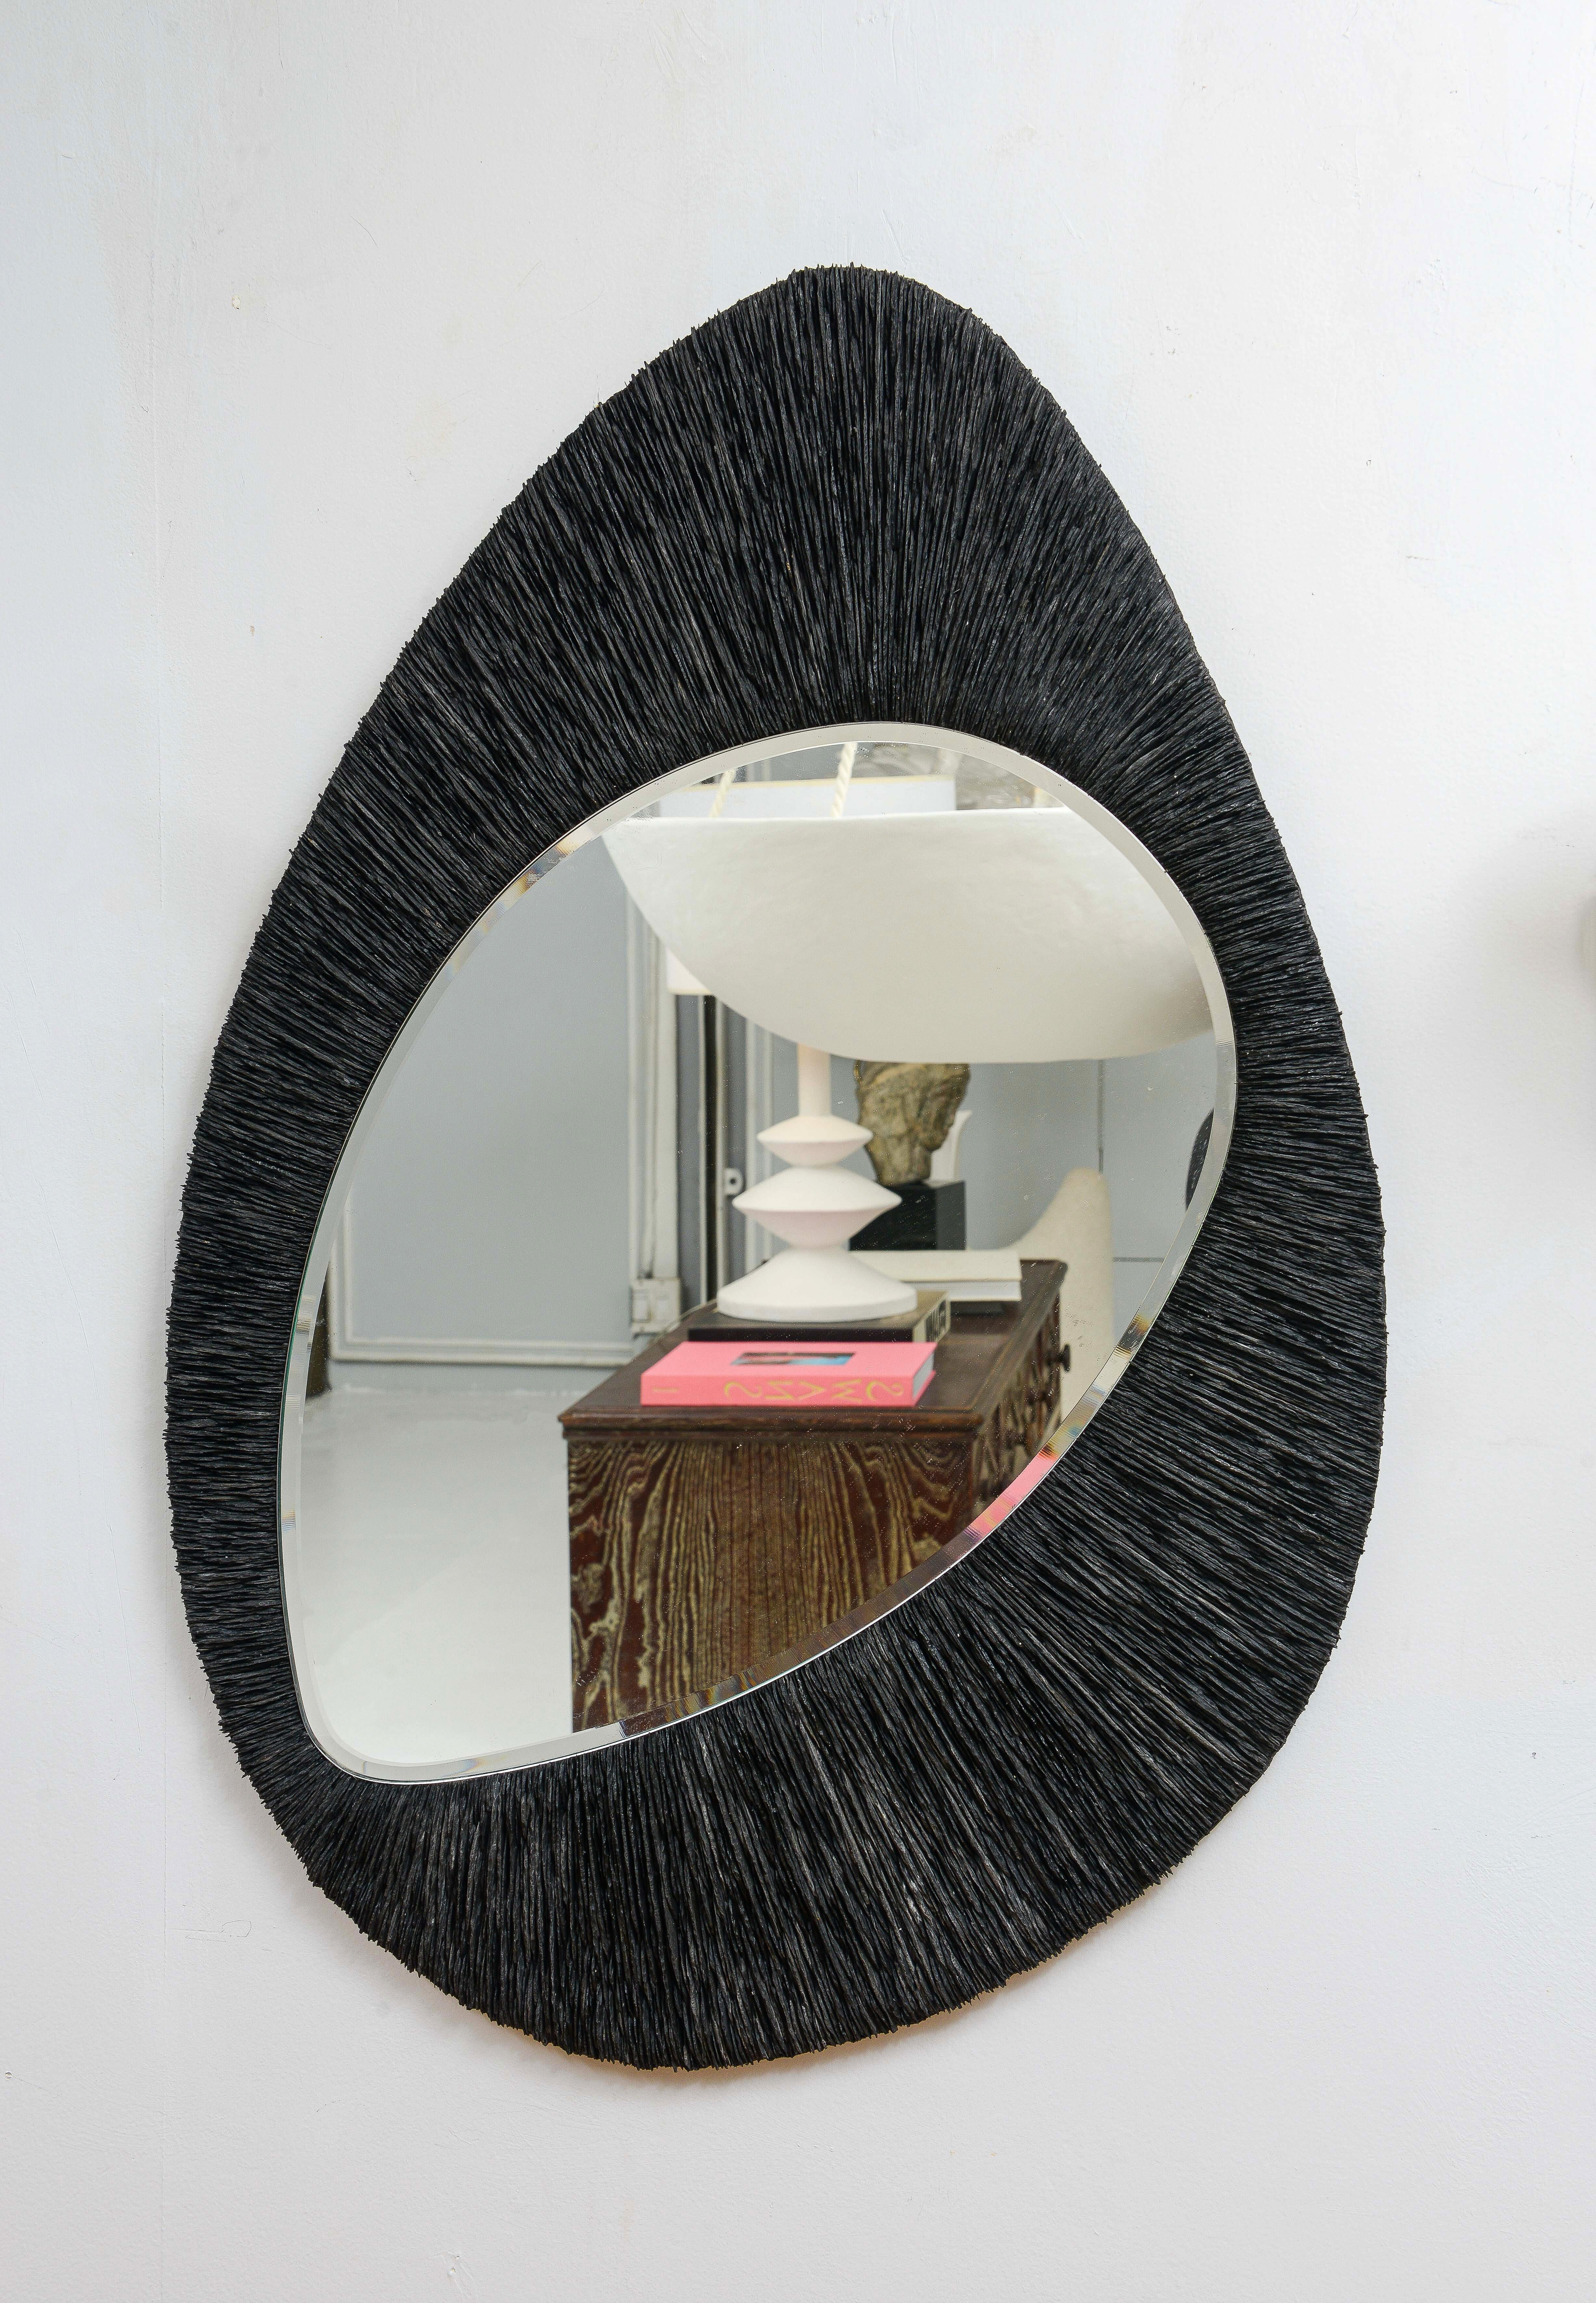 Maßgefertigter skulpturaler Schieferspiegel.
Bitte beachten Sie, dass dieser Spiegel in Frankreich hergestellt wird und mit einer Vorlaufzeit von 8-10 Wochen nach Ihren Wünschen gestaltet werden kann. Derzeit ist ein Spiegel verfügbar.
  